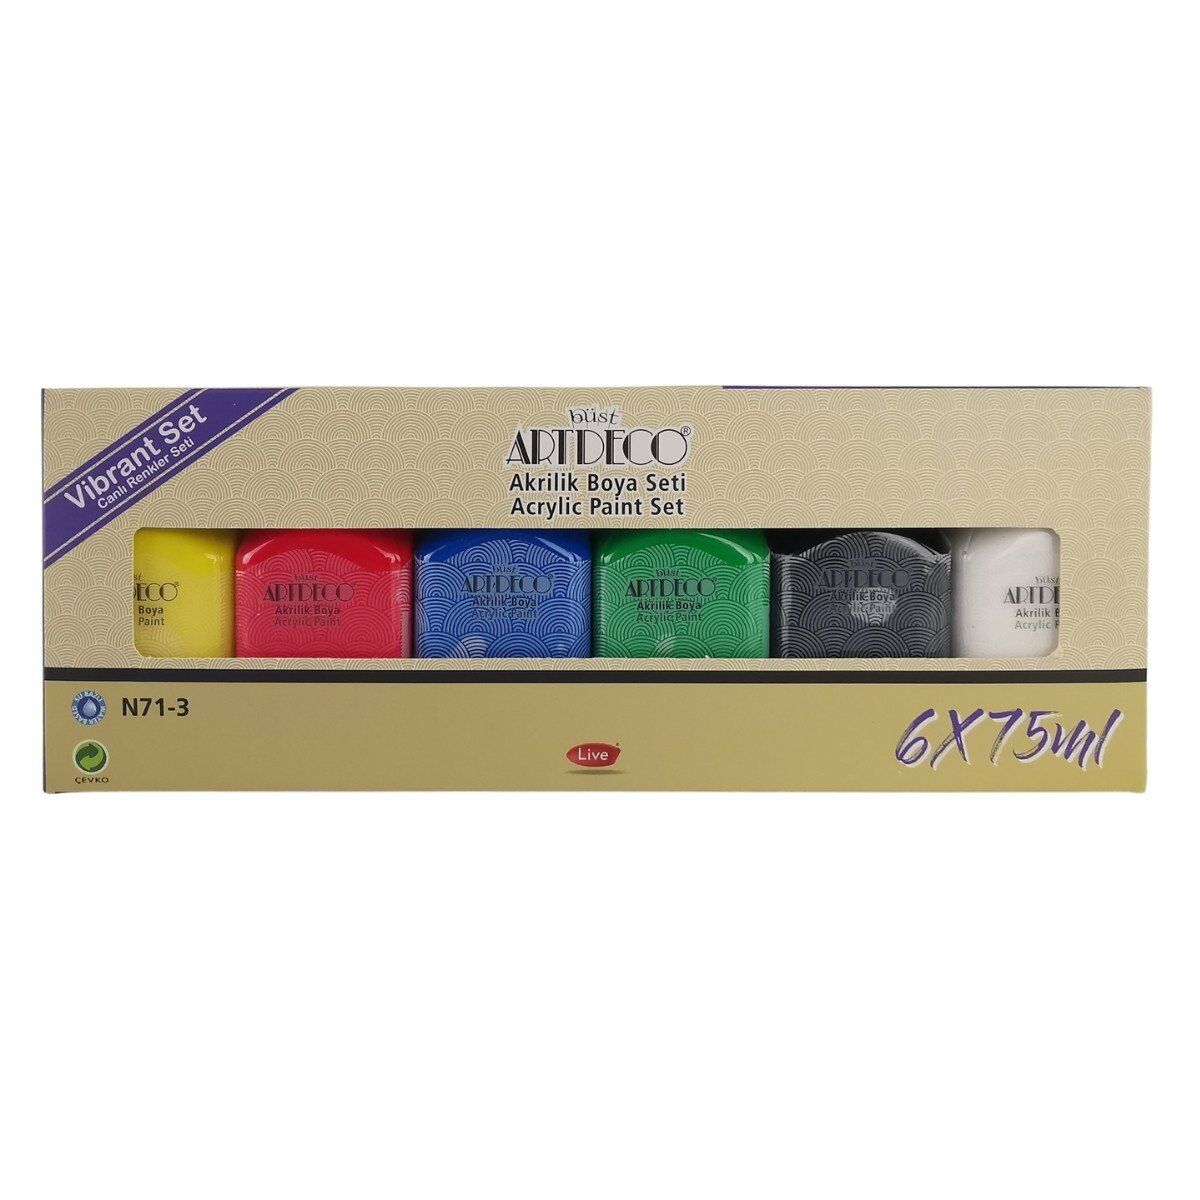 Artdeco Akrilik Boya Canlı Renkler 6x75ml Set